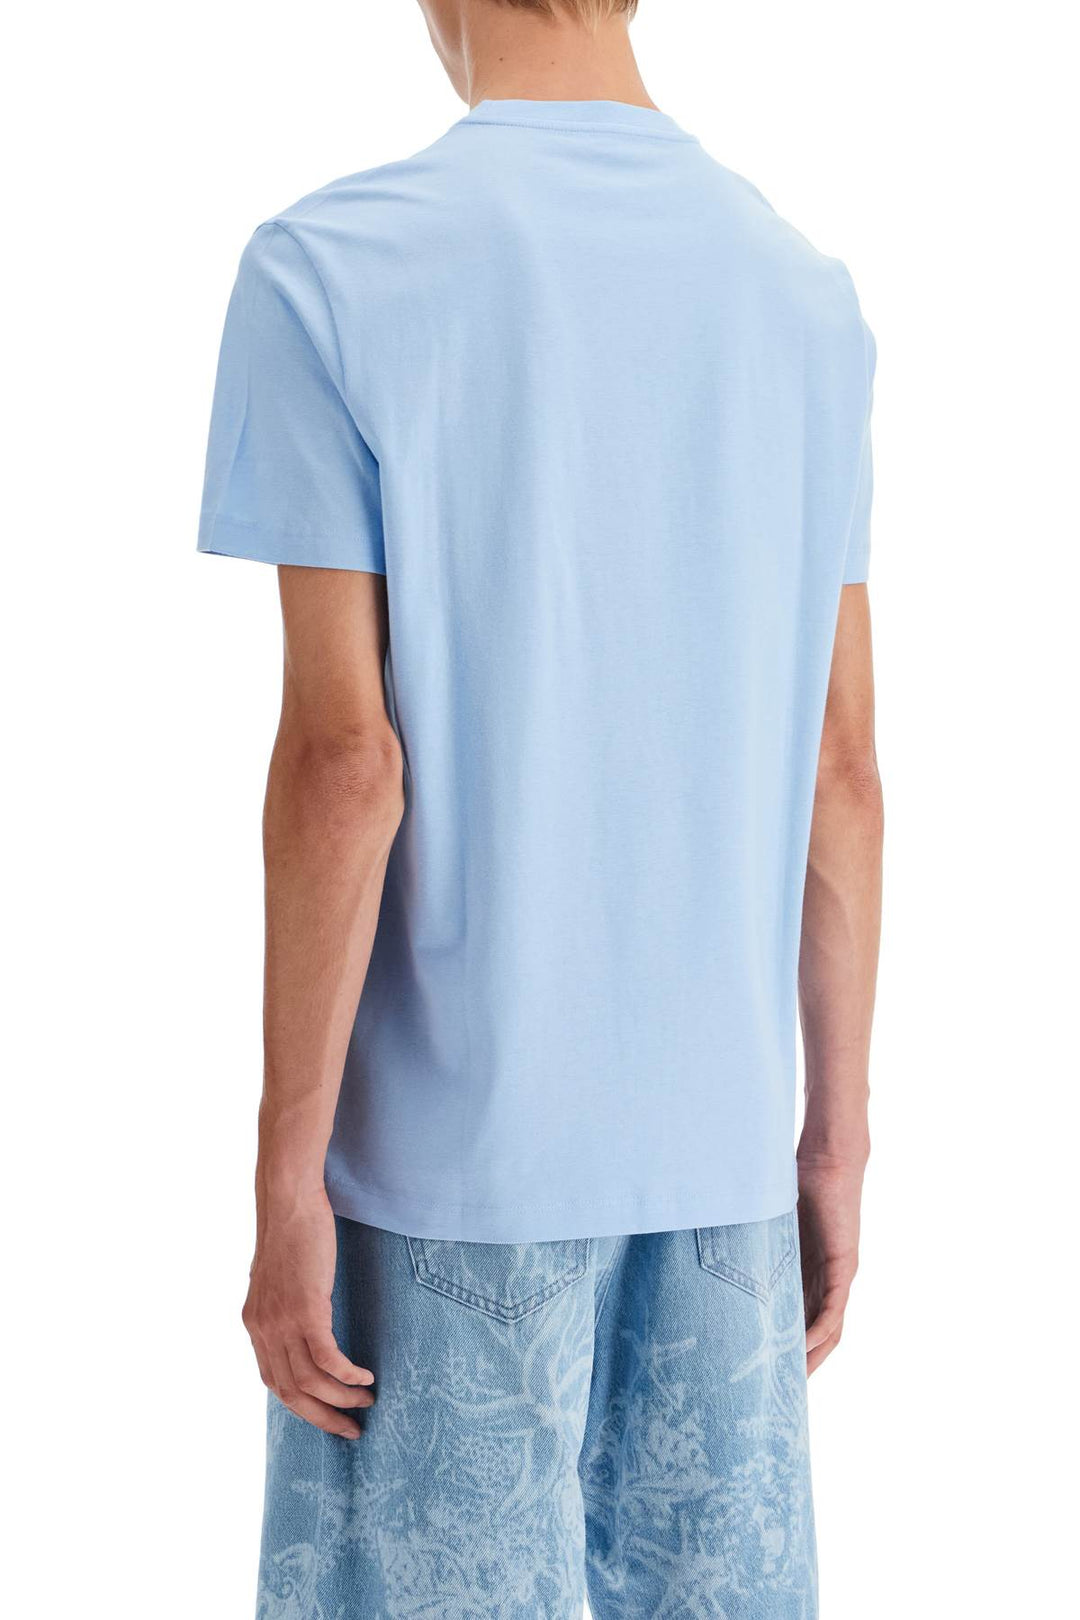 Versace Embroidered Logo T Shirt   Light Blue